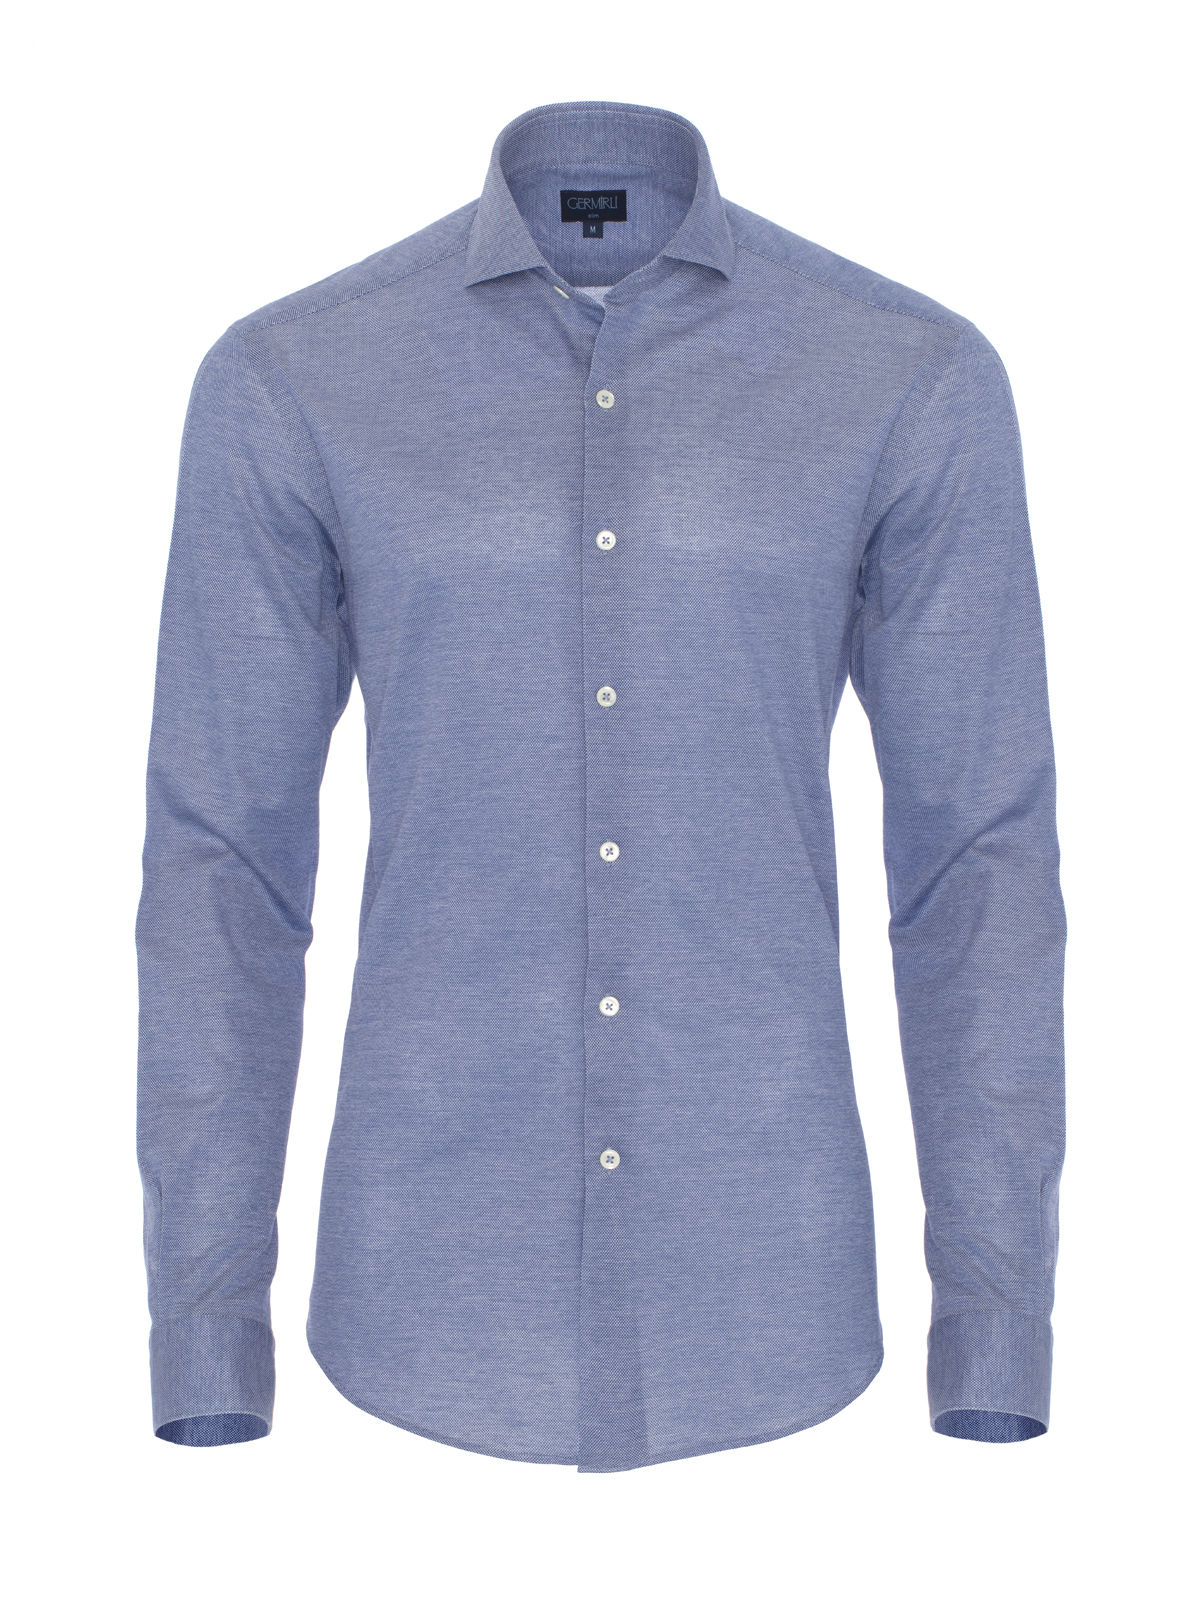 Germirli - Germirli Dark Blue Semi Spread Collar Piquet Knitted Slim Fit Shirt